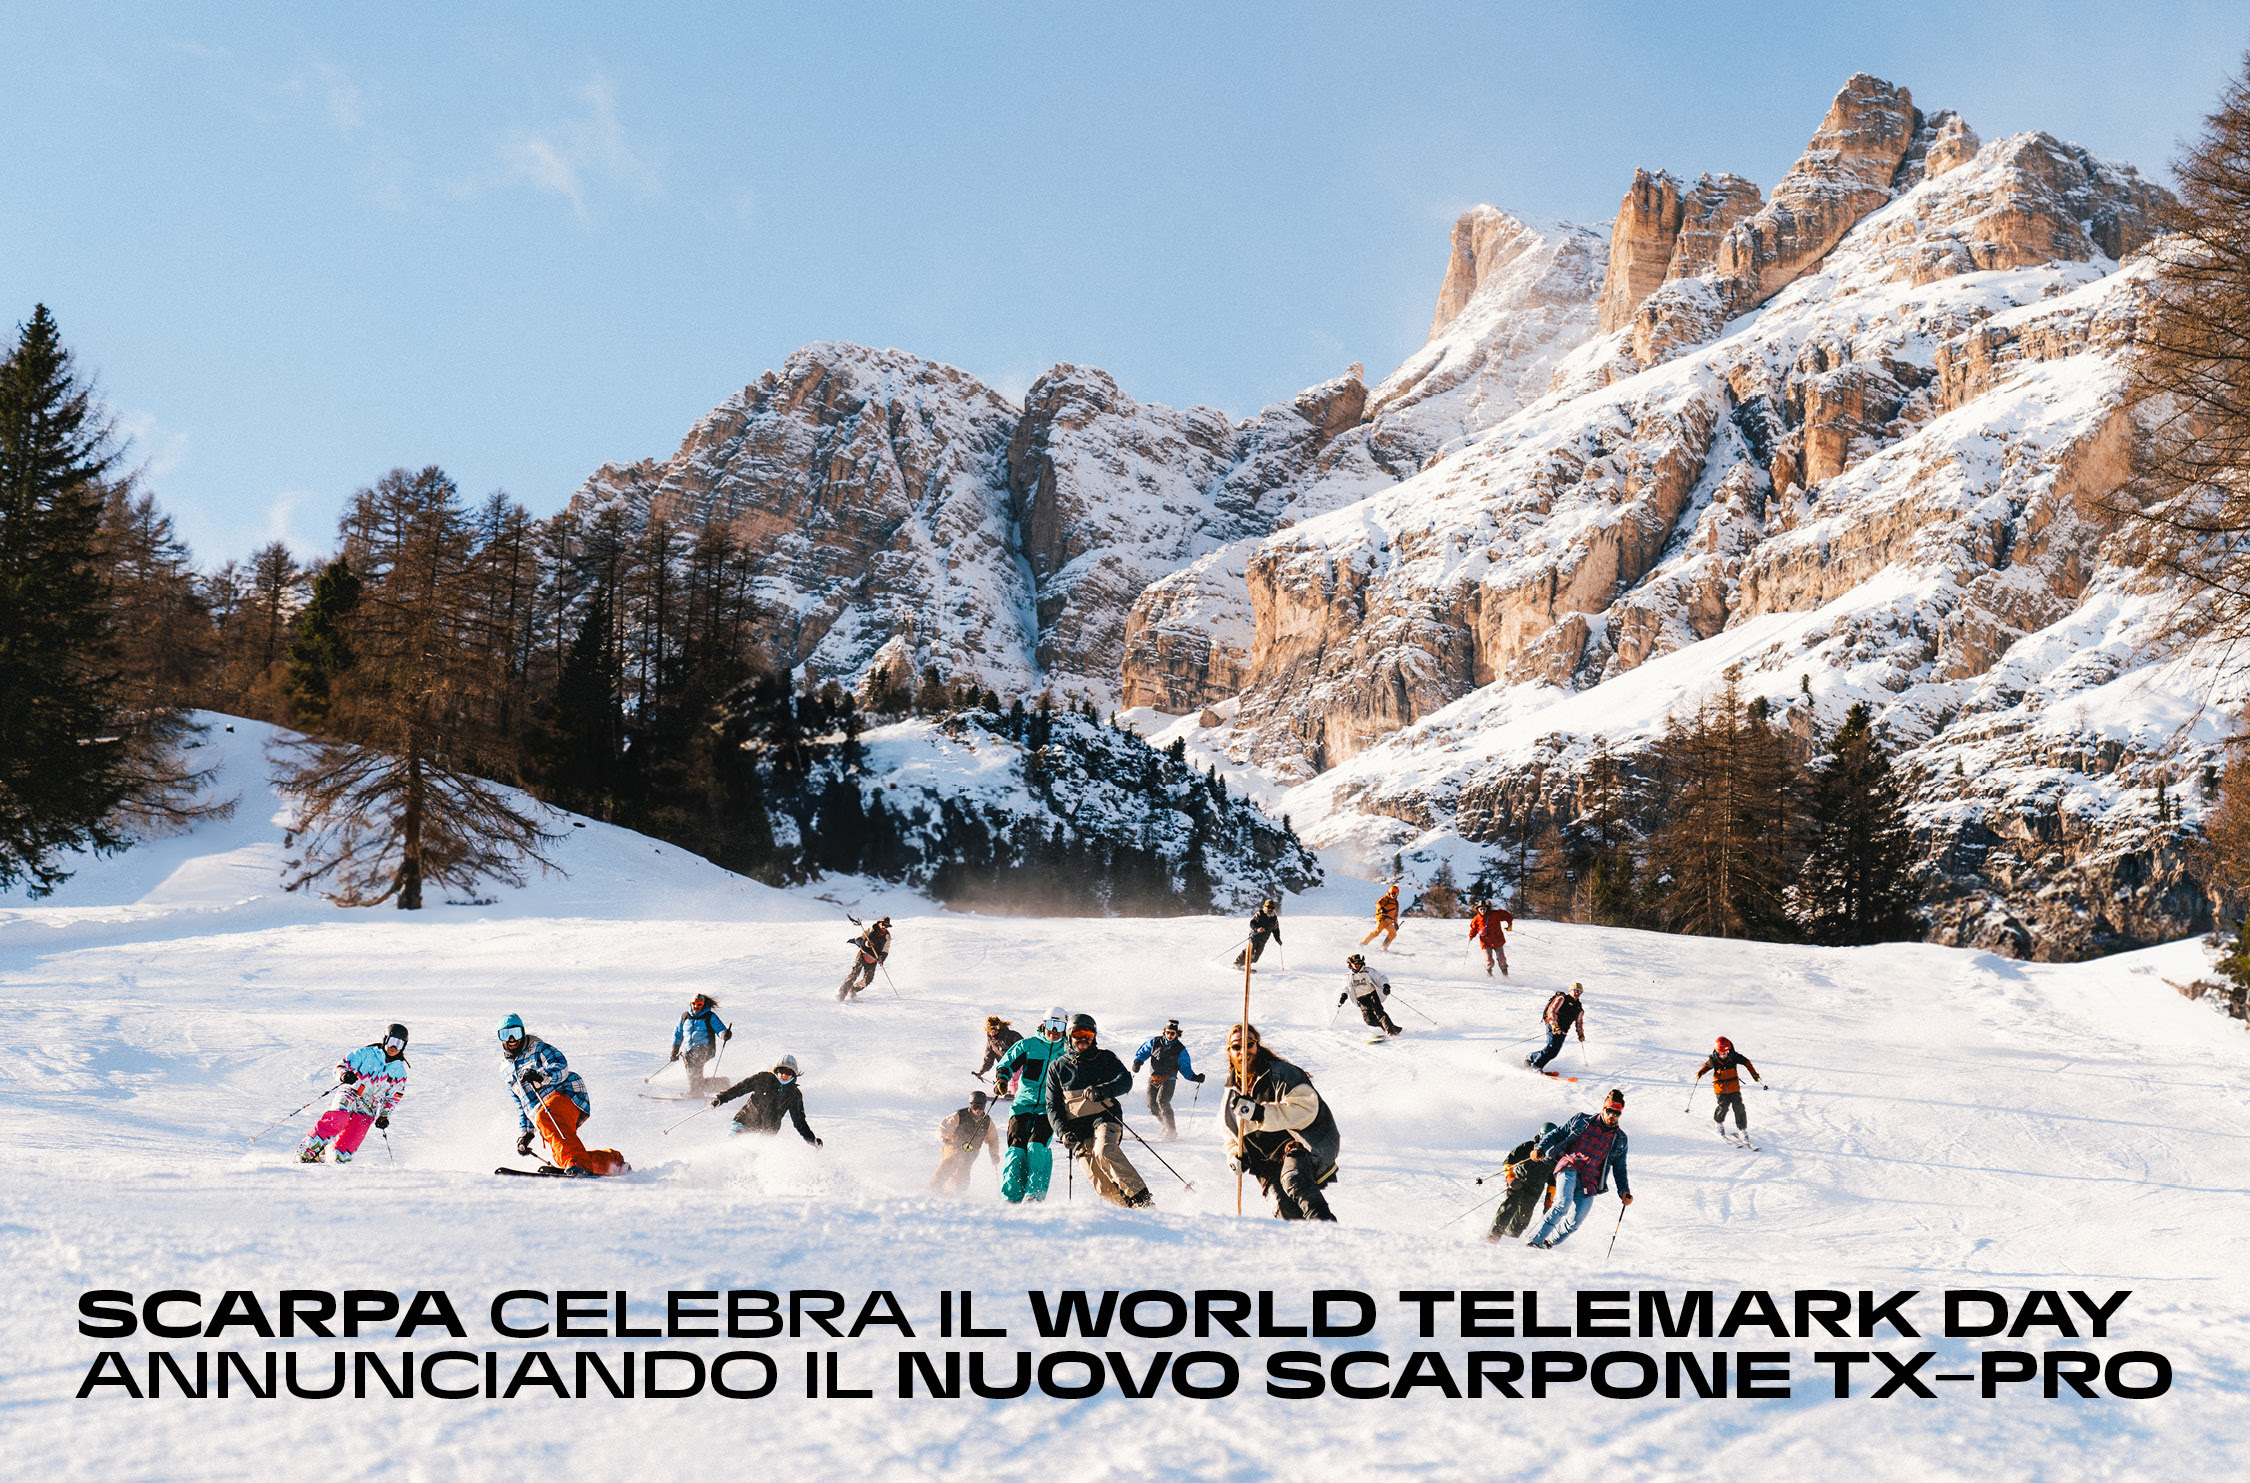 Scarpa celebra il World Telemark Day annunciando il nuovo scarpone Tx-ProAttrezzaturaTrekking.it